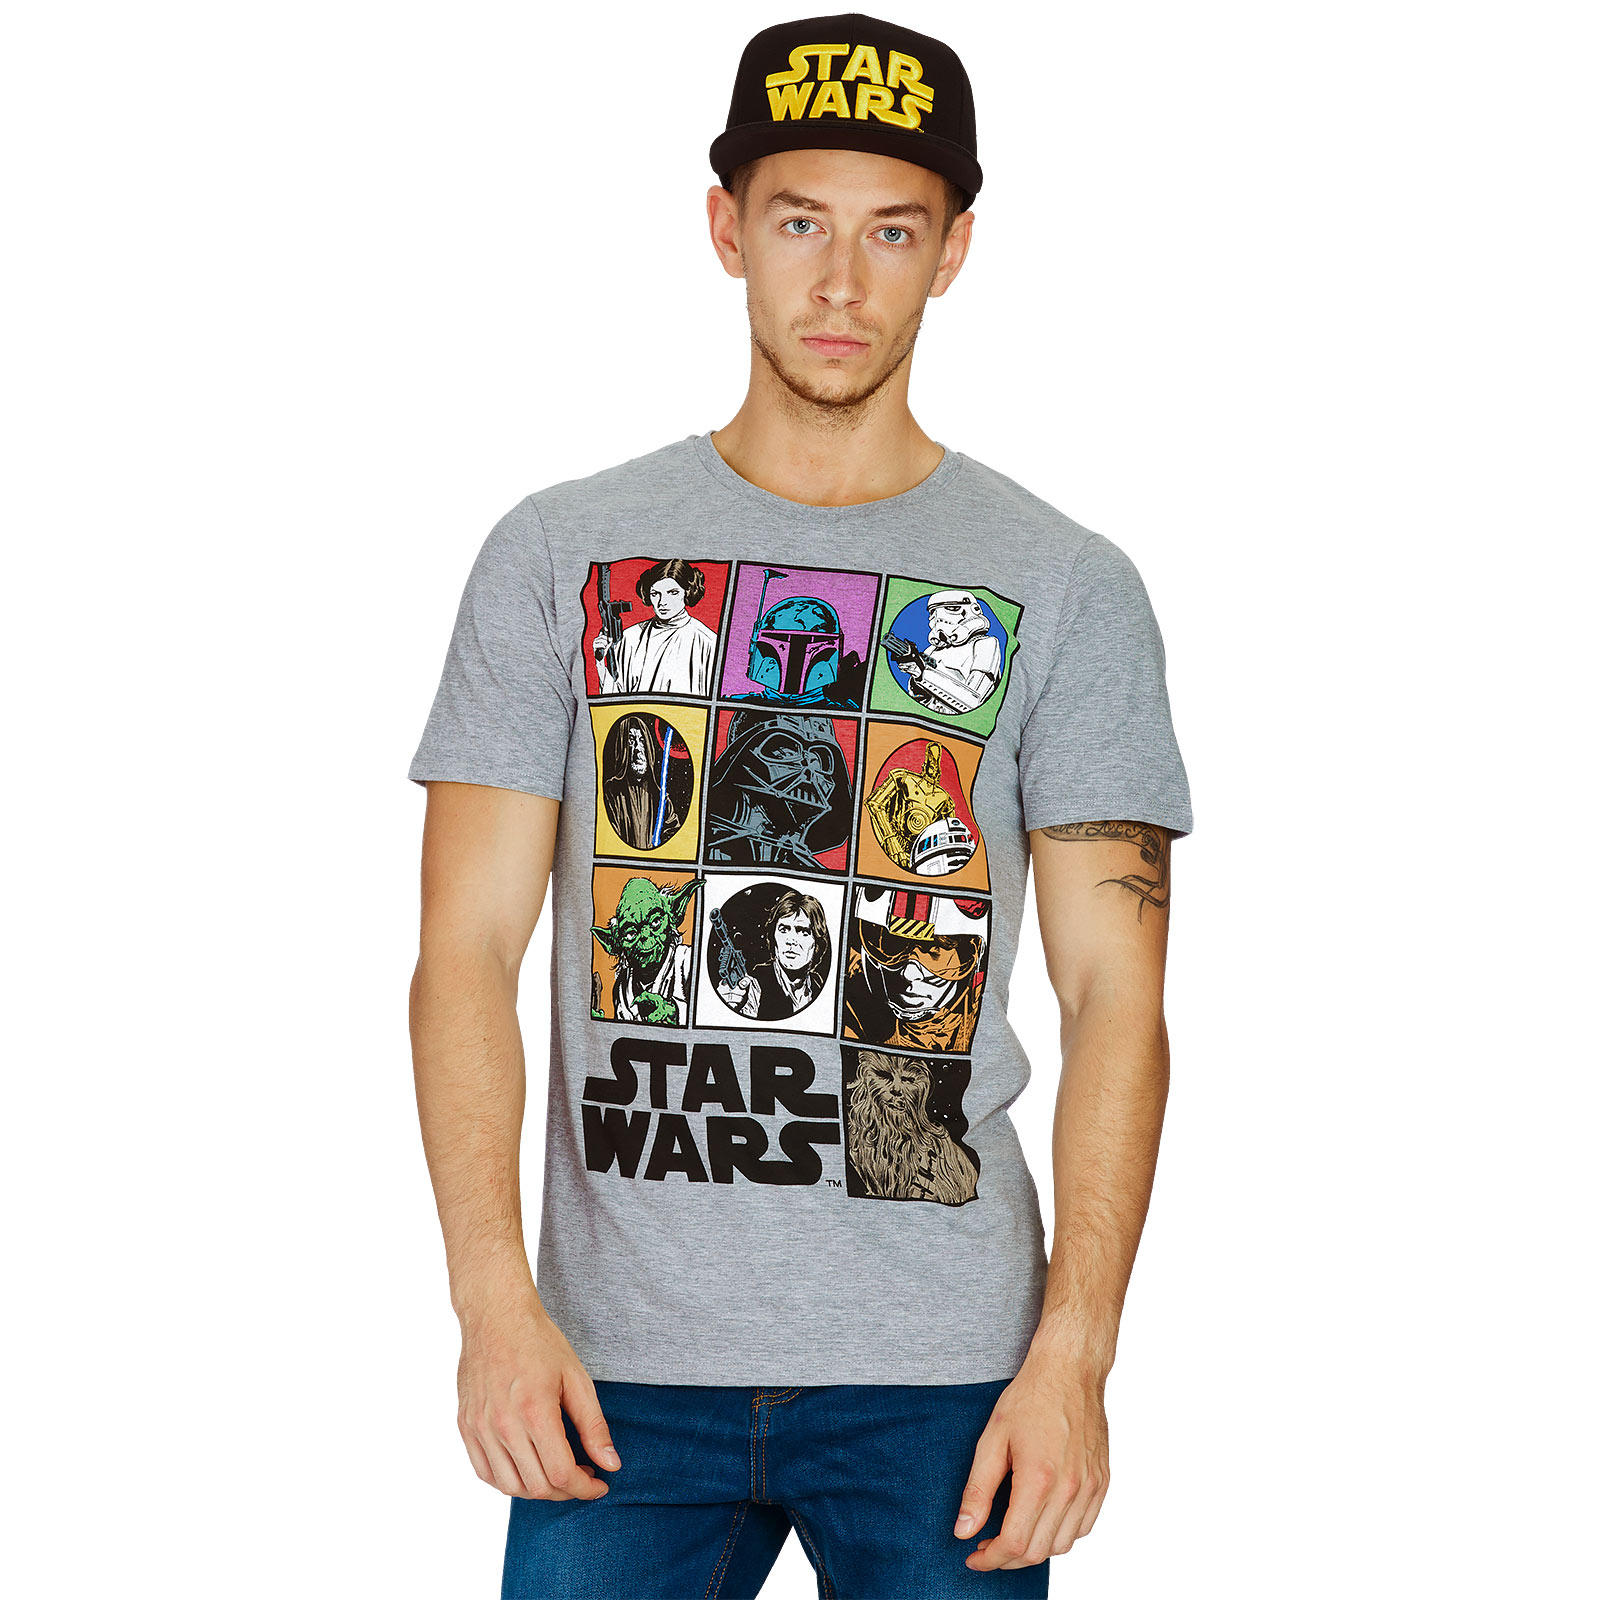 Star Wars - Characters T-Shirt grey